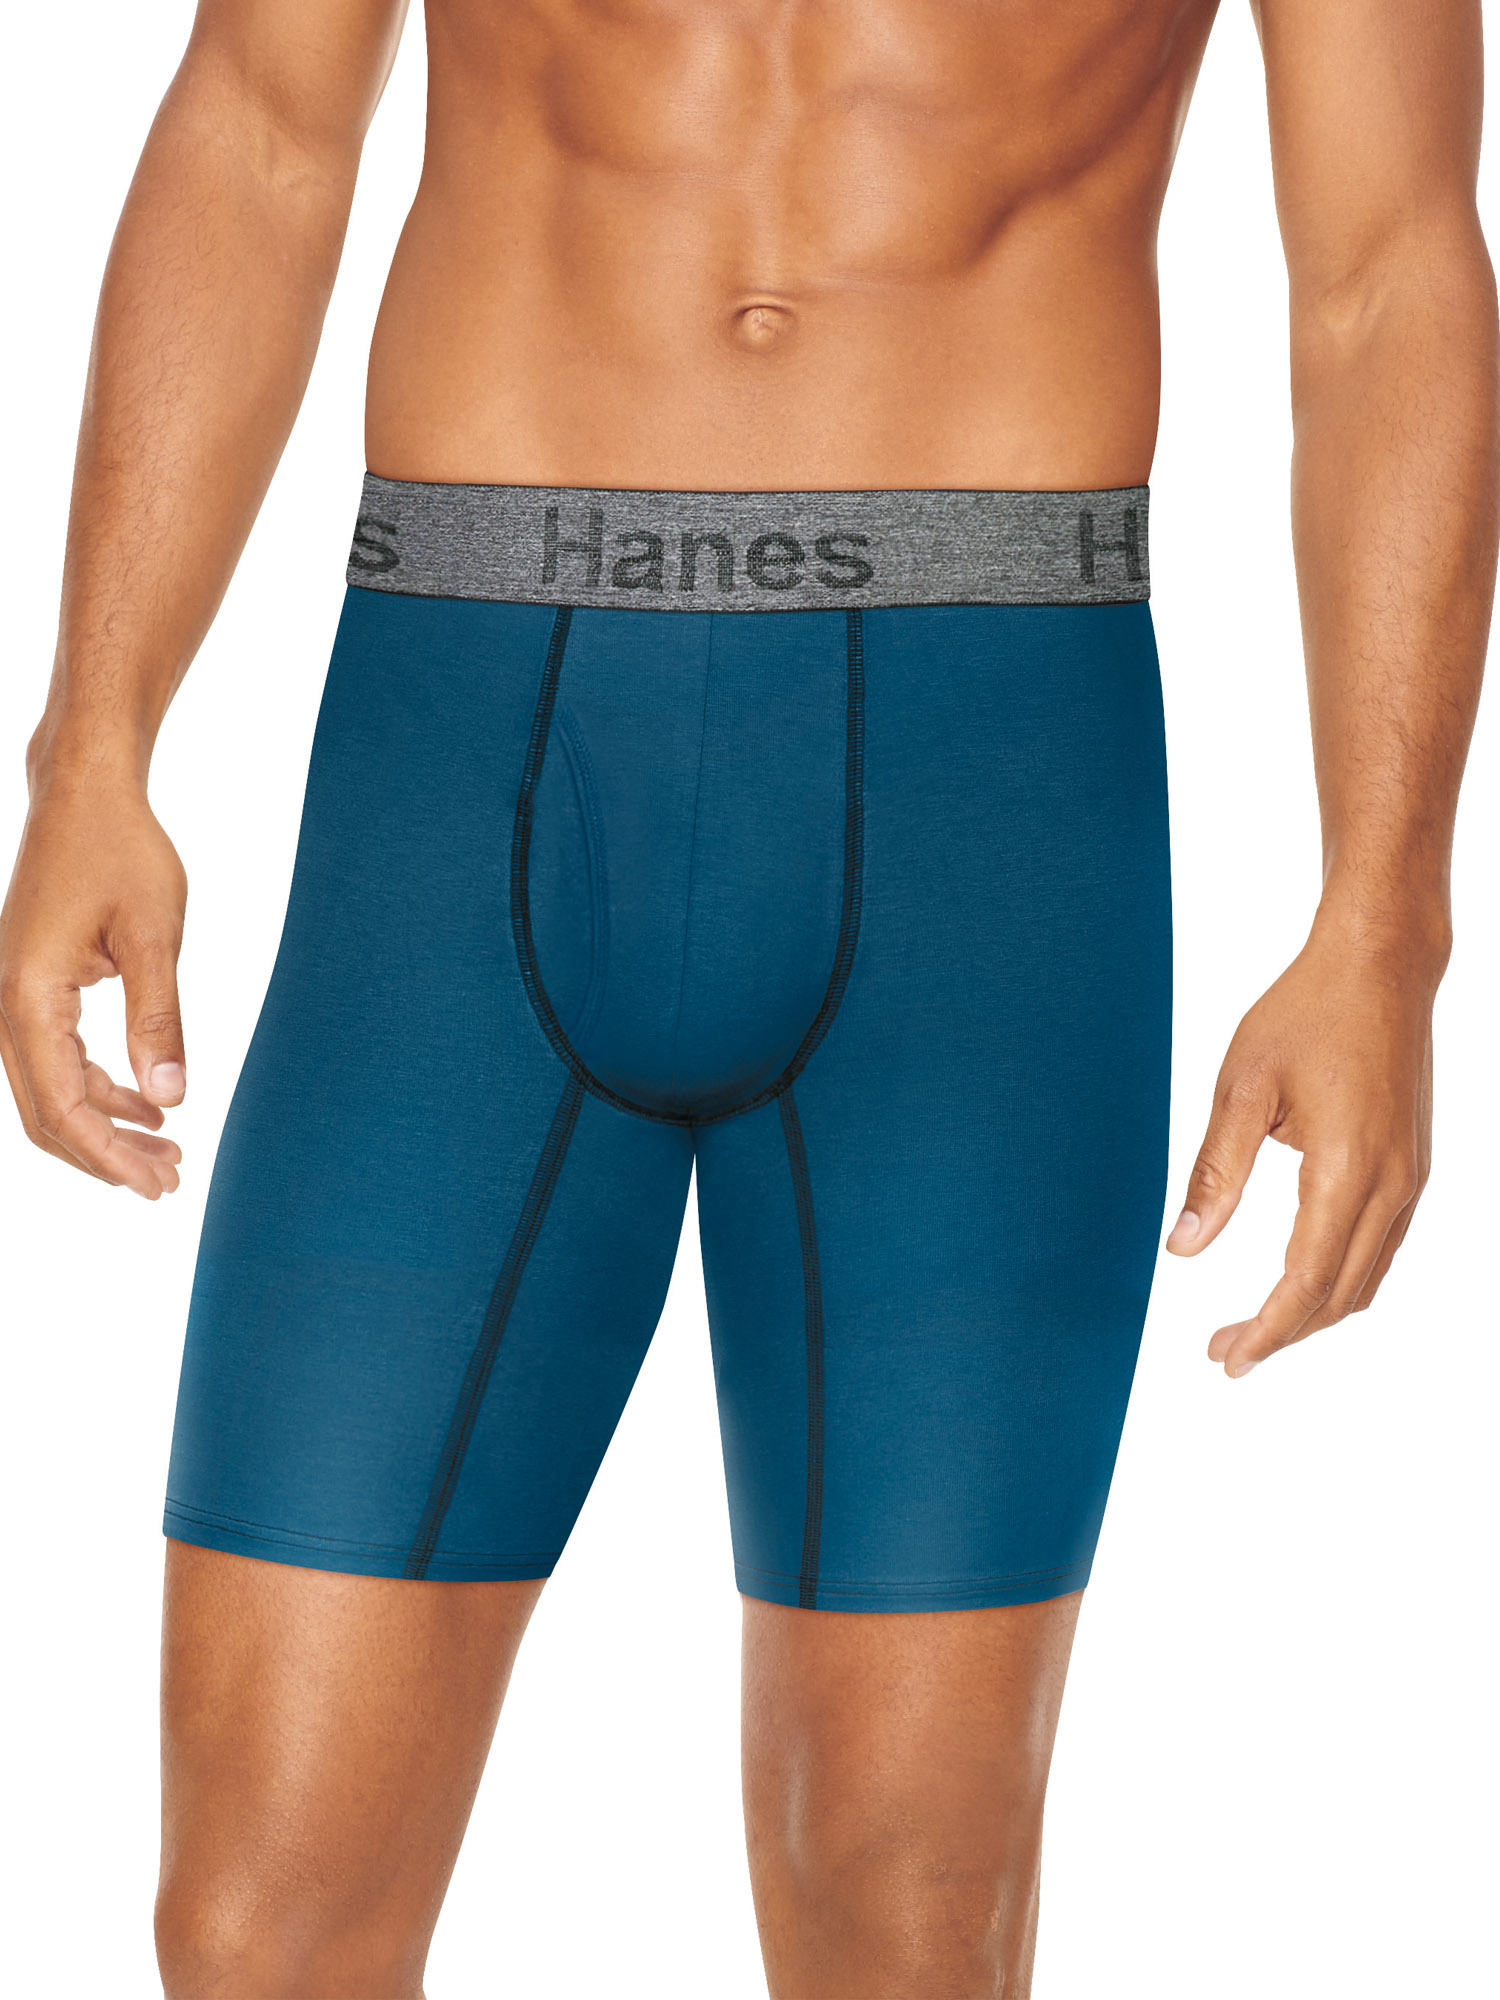 Hanes Men's Comfort Flex Fit Long Leg Boxer Briefs, 3 + 2 Bonus Pack - image 1 of 4